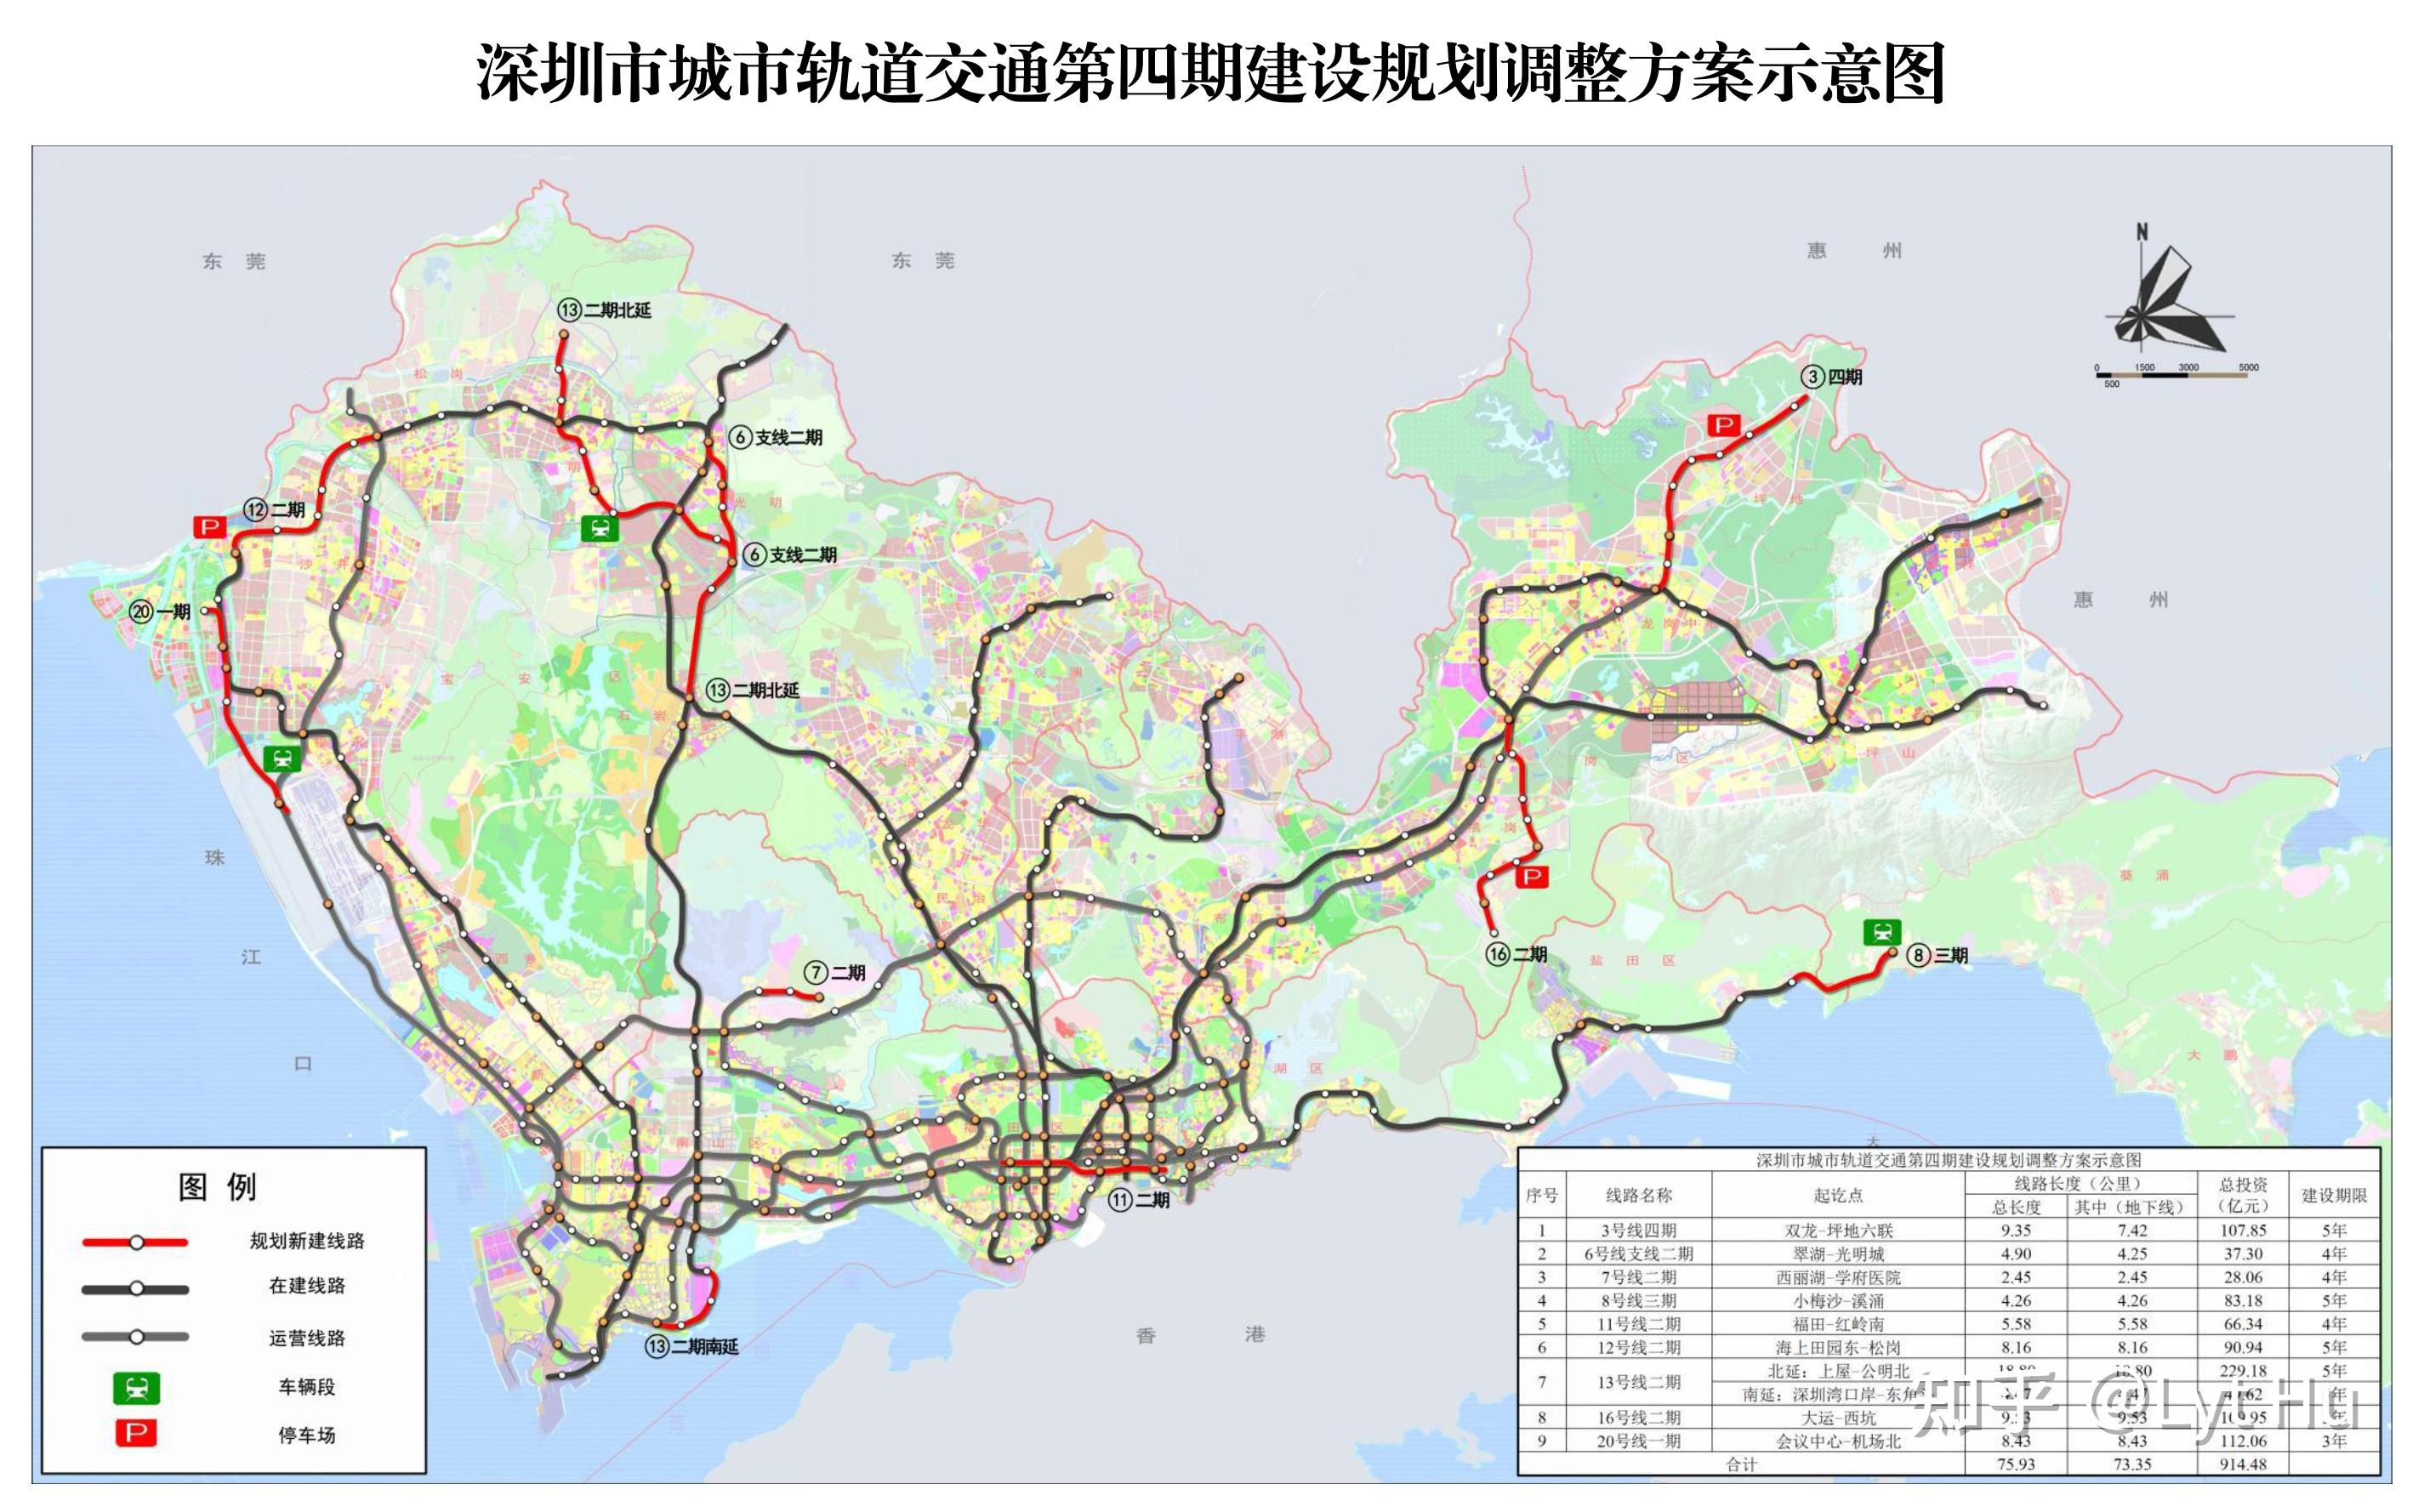 (红线为四期规划调整部分)深圳轨道交通图 2021 / 2025 designed by